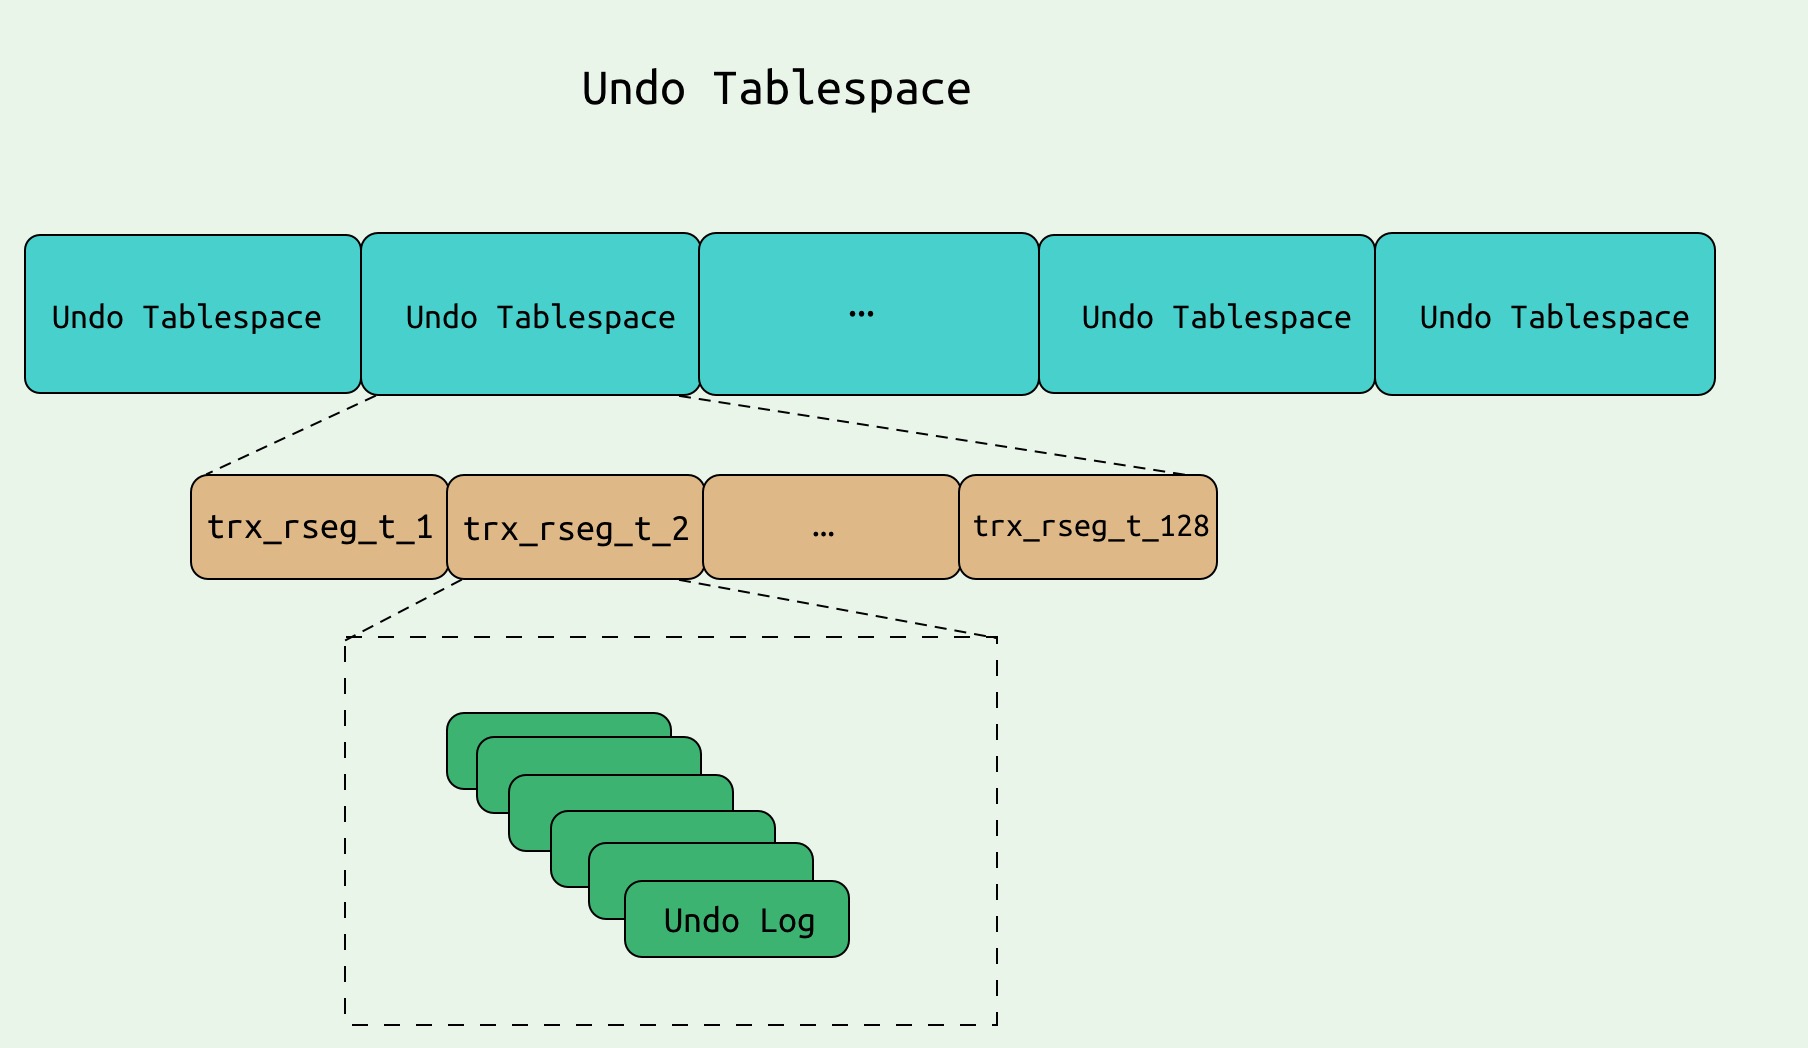 undo_tablespace